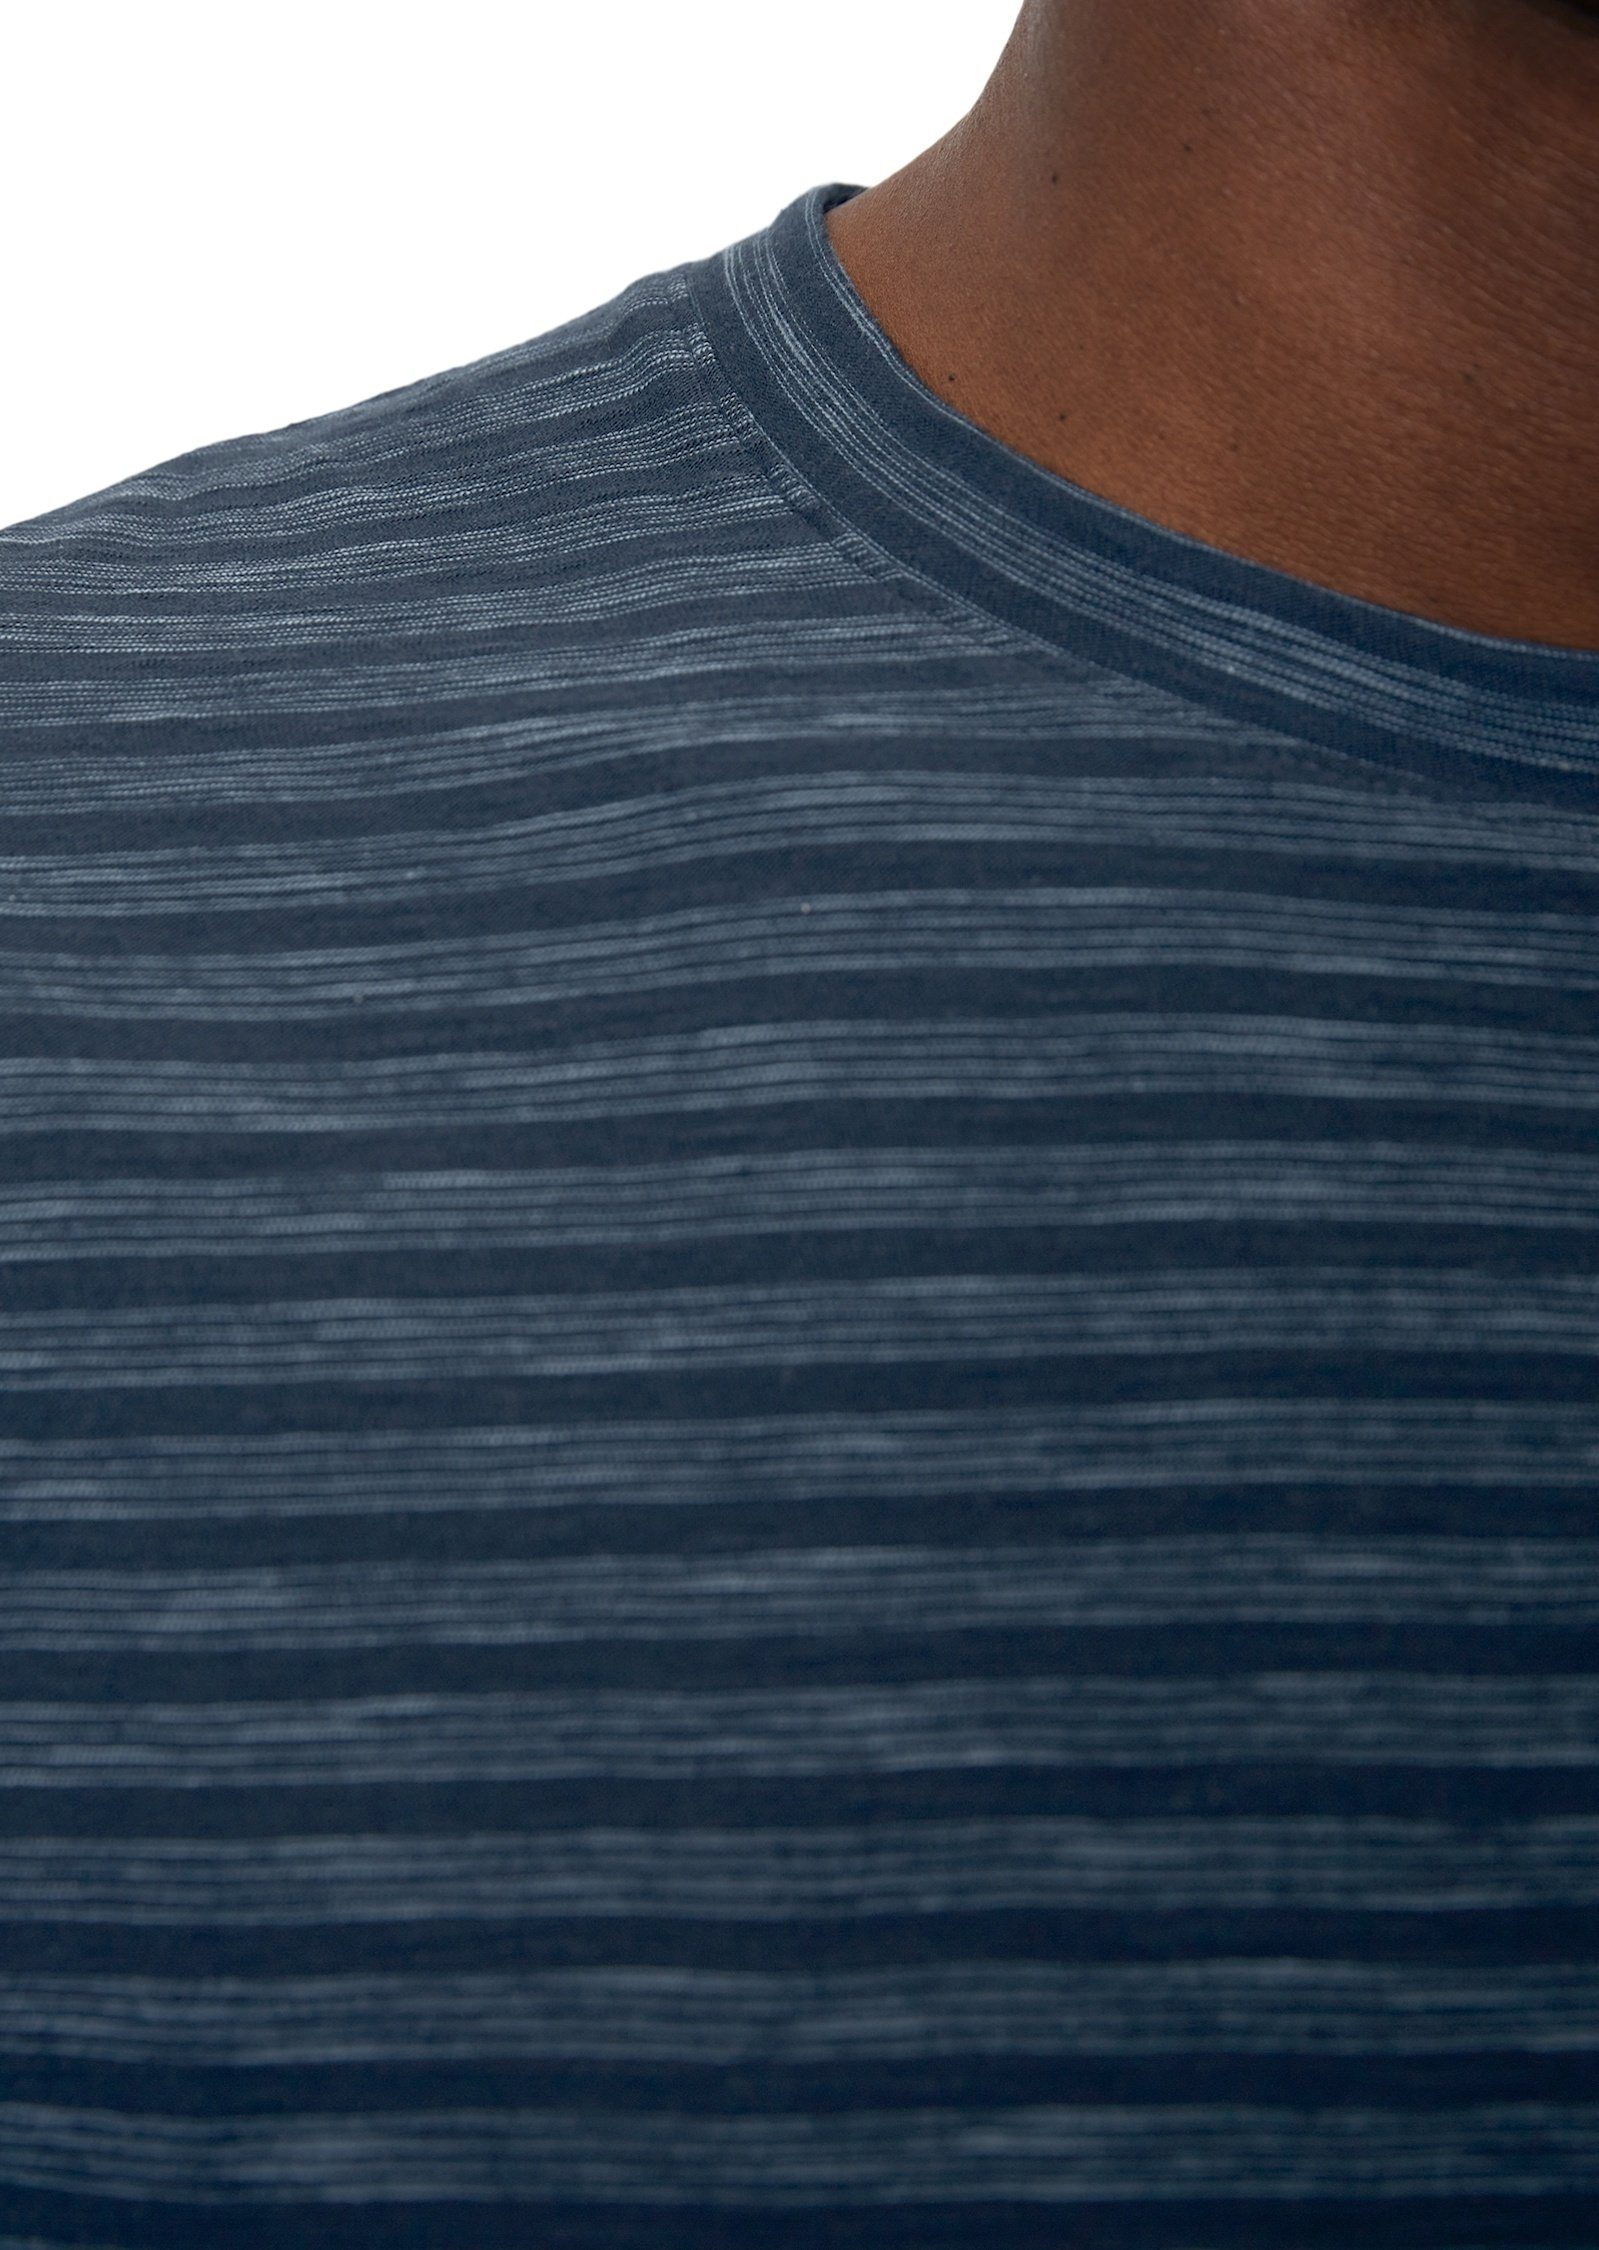 Slub-Jersey T-Shirt in softem dunkelblau Marc O'Polo